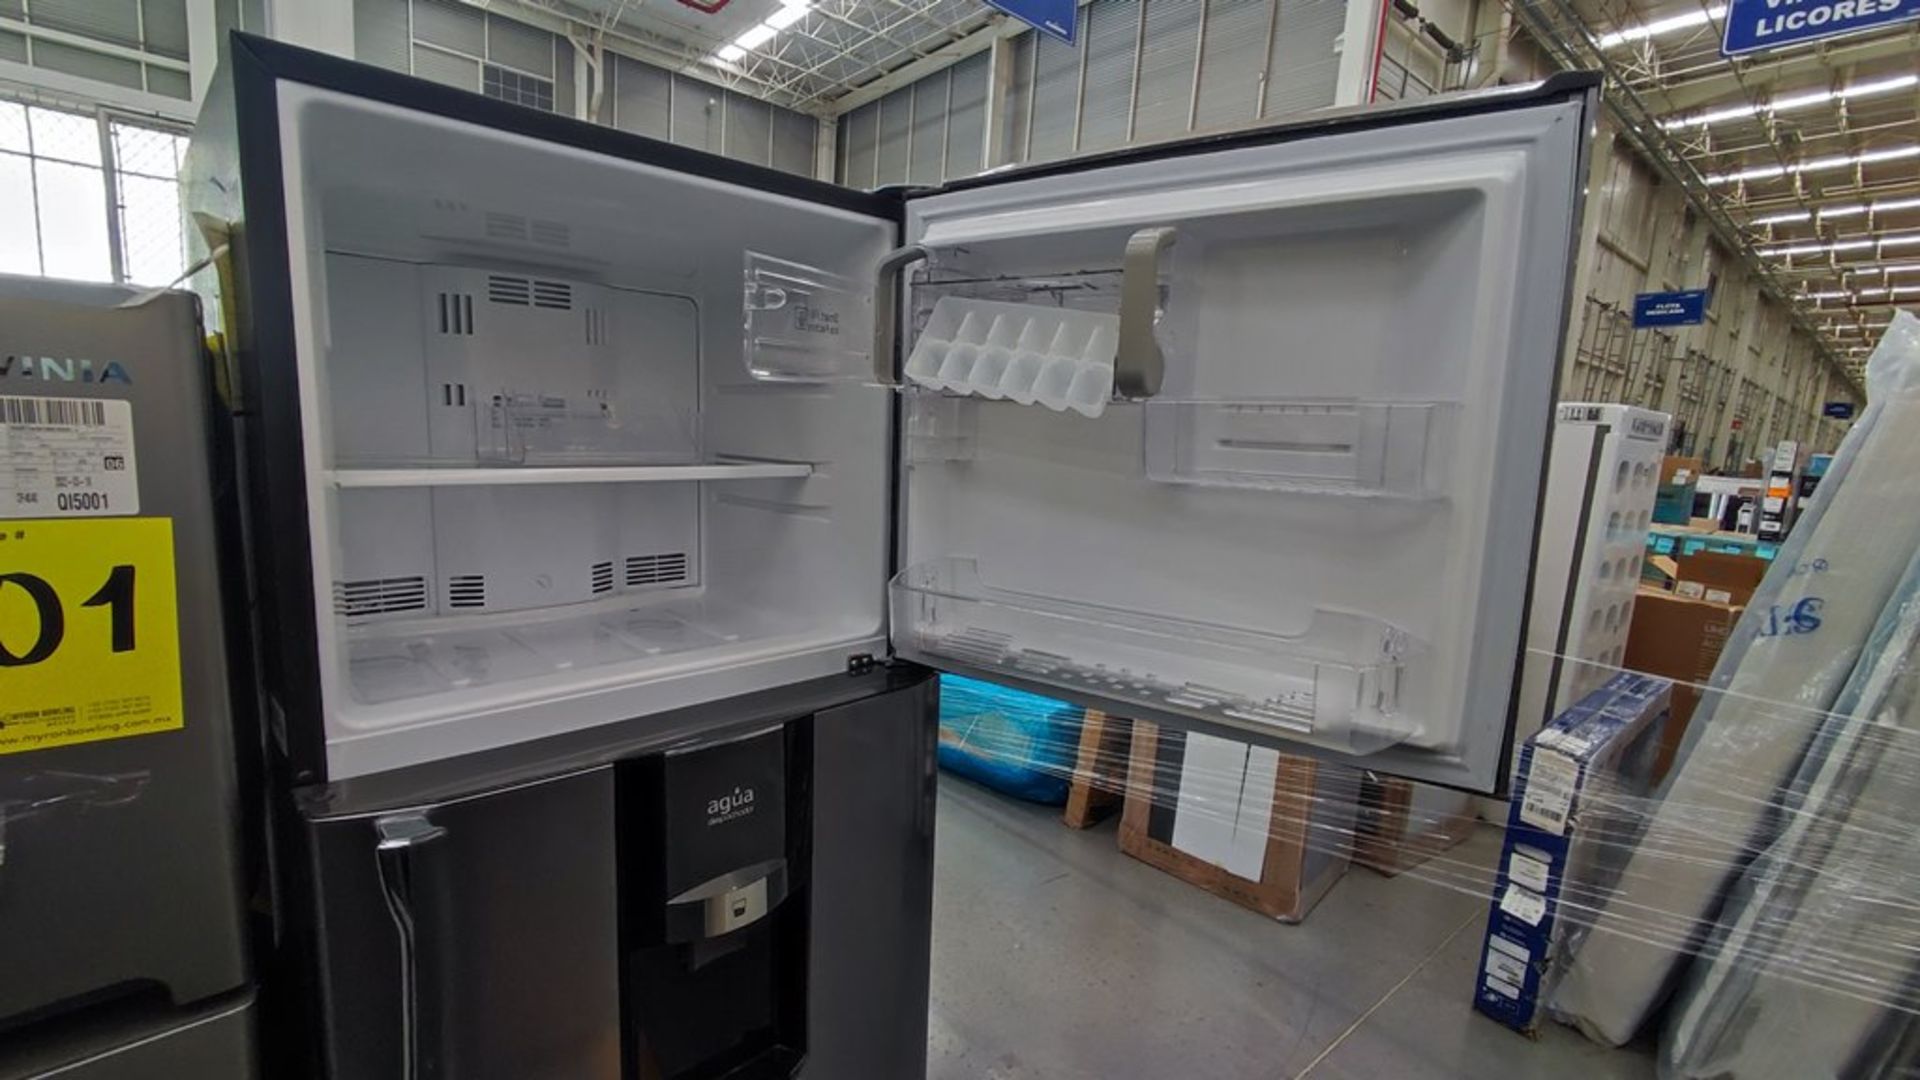 Lote de 2 refrigeradores contiene: 1 Refrigerador Marca Mabe, Modelo RMT400RY, No de serie 2202B401 - Image 8 of 15